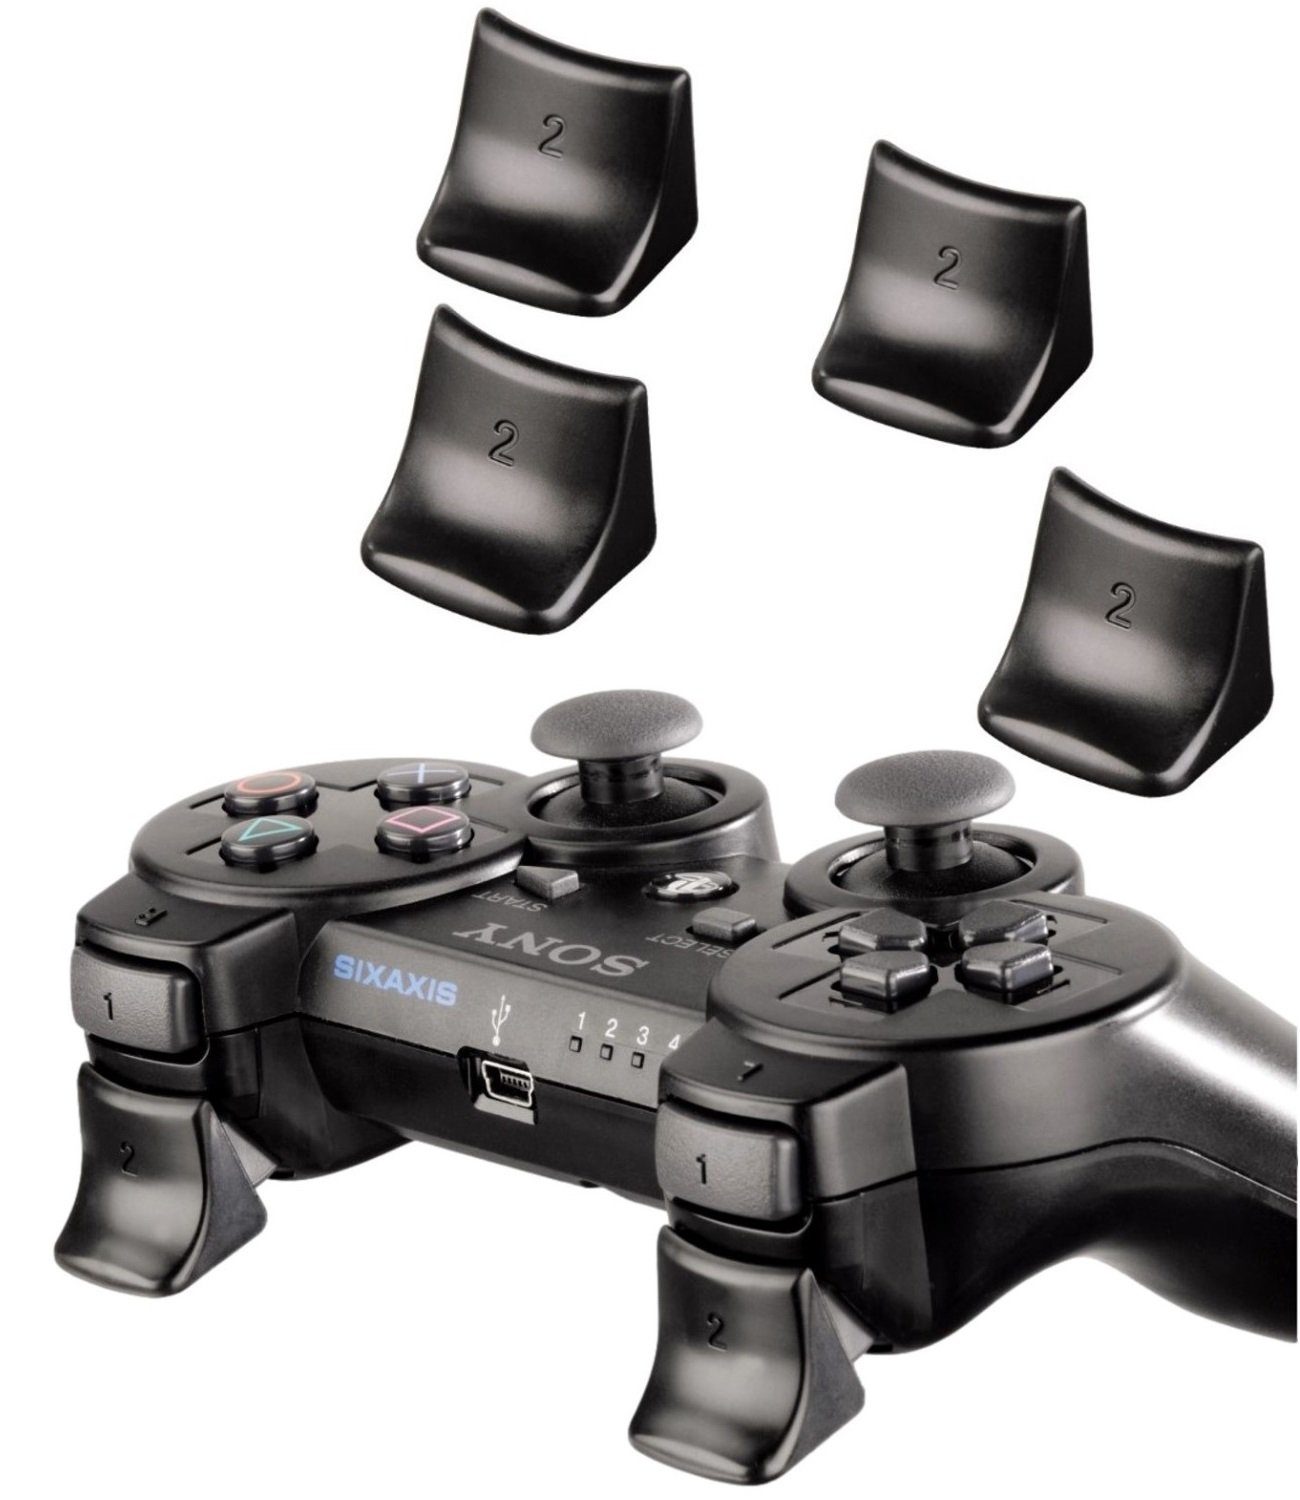 Hama Trigger Aufsätze Pack Knöpfe Tasten L2 + R2 Controller (Für Sony PS3  Wireless Controller, besseres Handling der L2- und R2-Taste, Ergonomisch,  Einfach aufzustecken, Jederzeit abnehmbar)